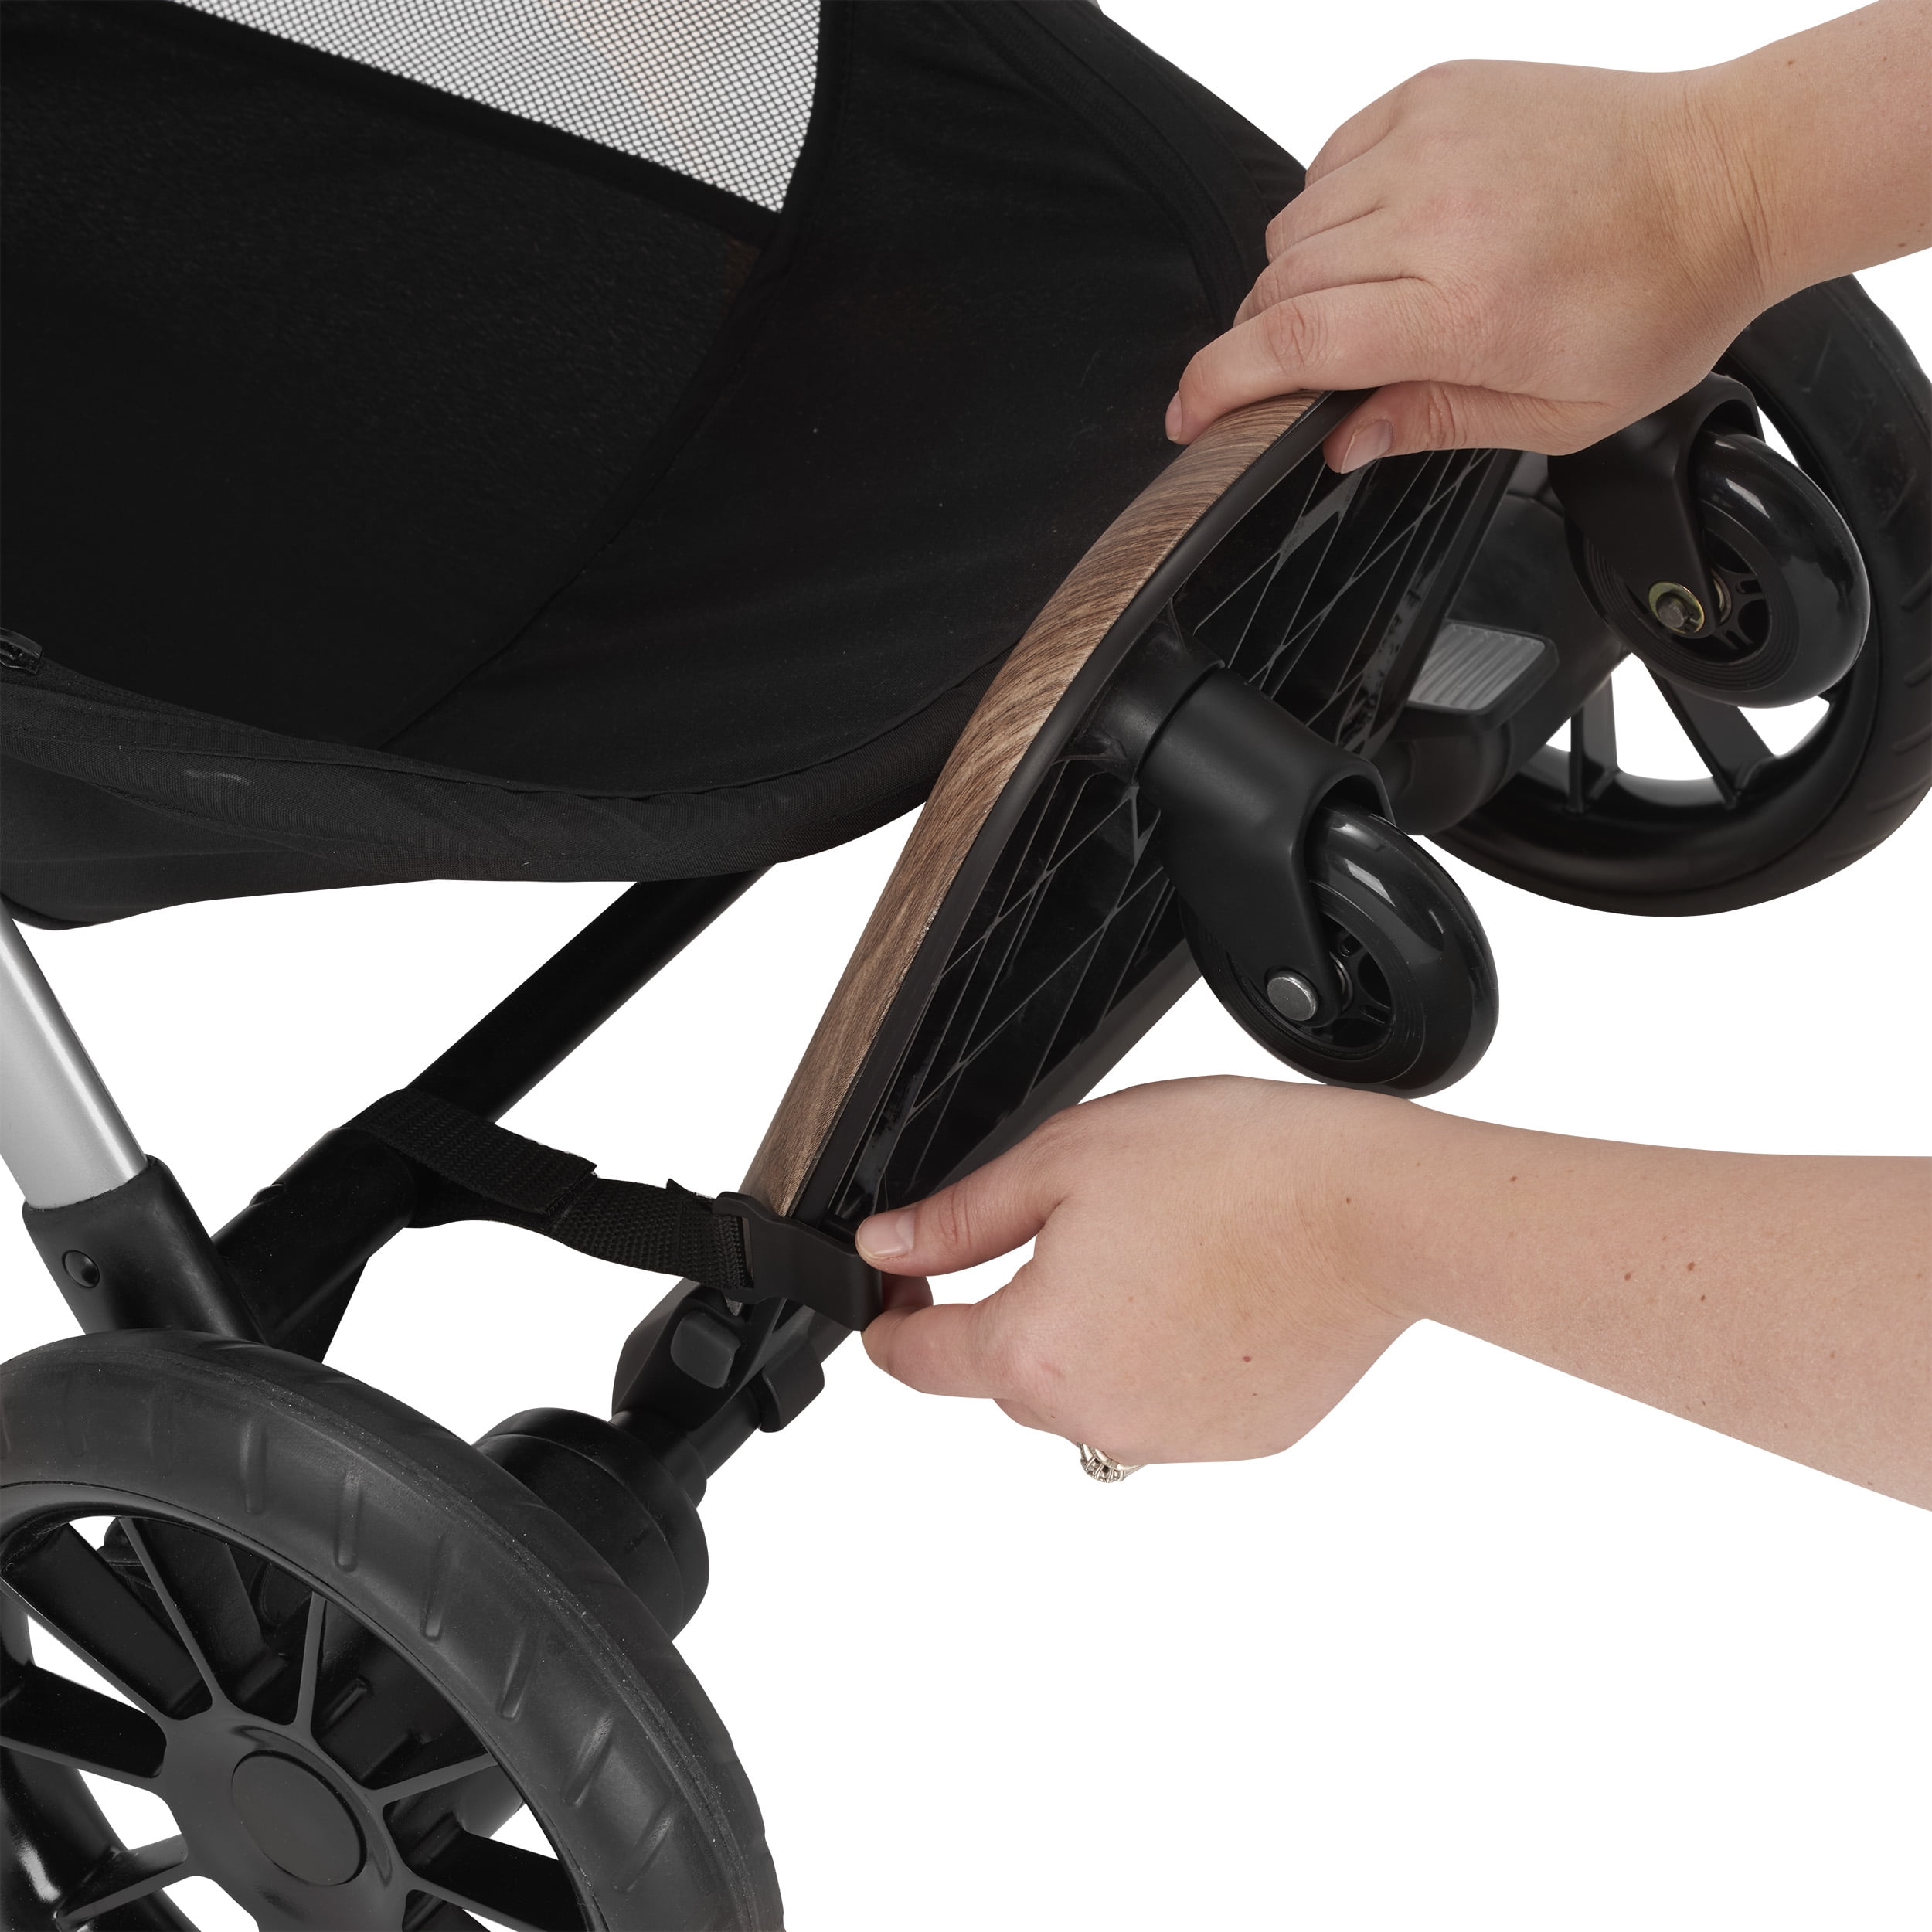 evenflo pivot stroller wheels